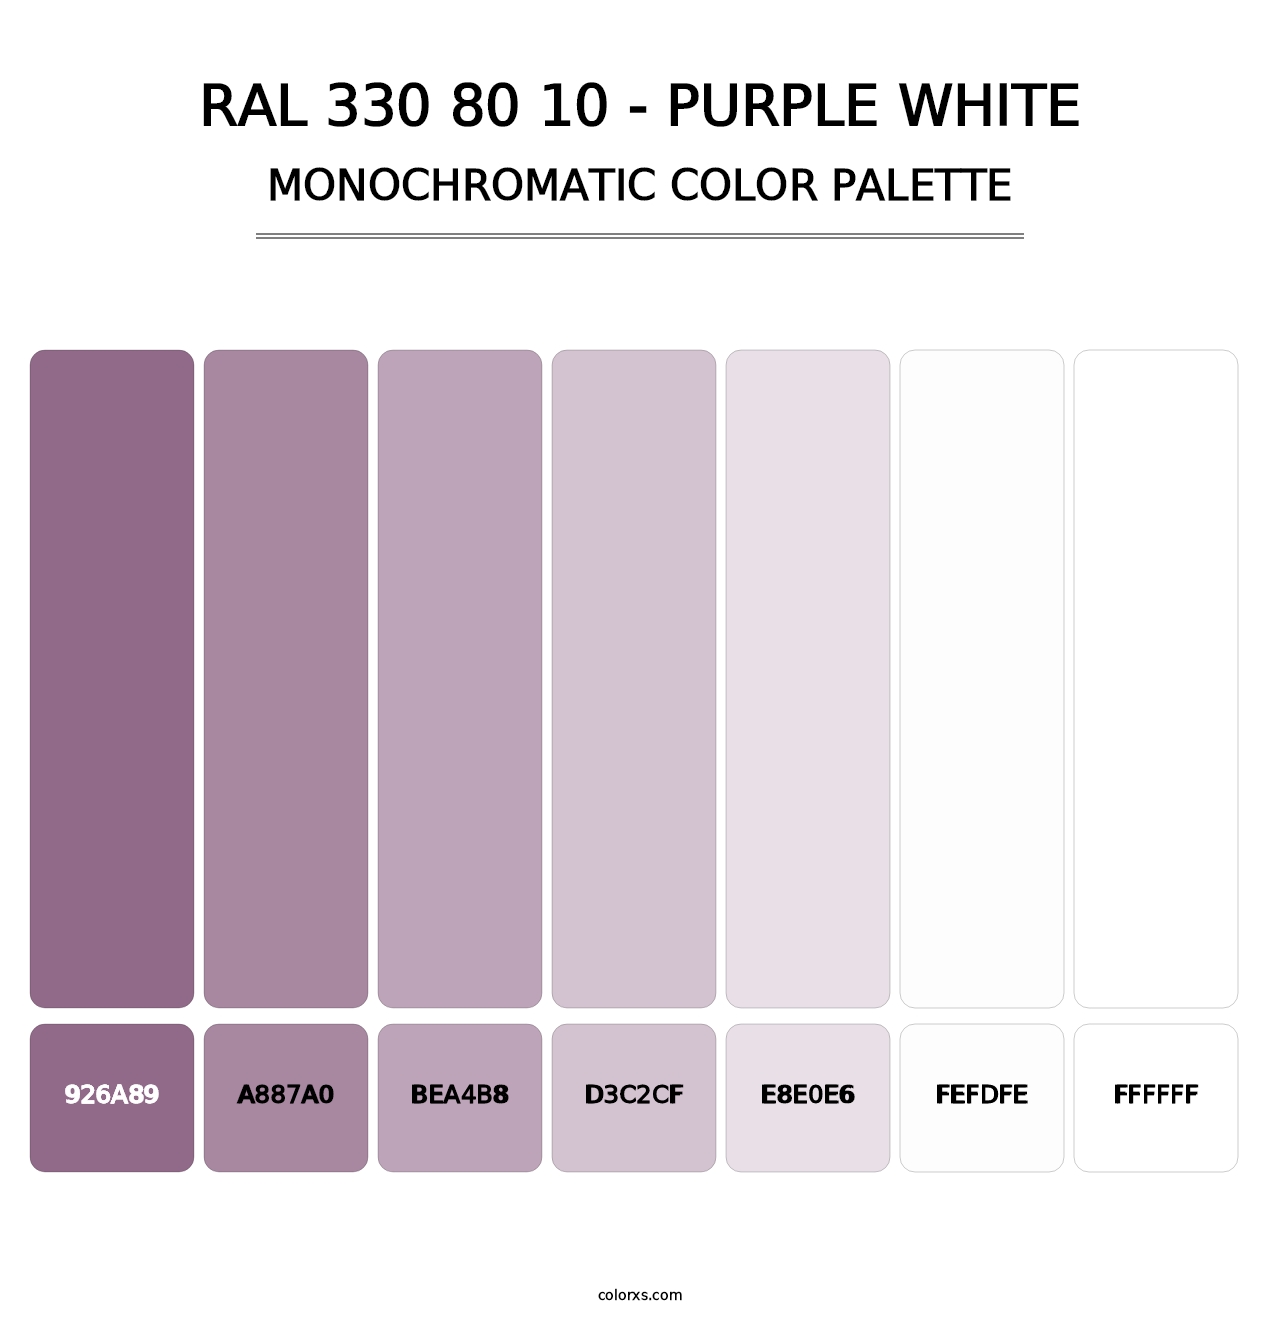 RAL 330 80 10 - Purple White - Monochromatic Color Palette